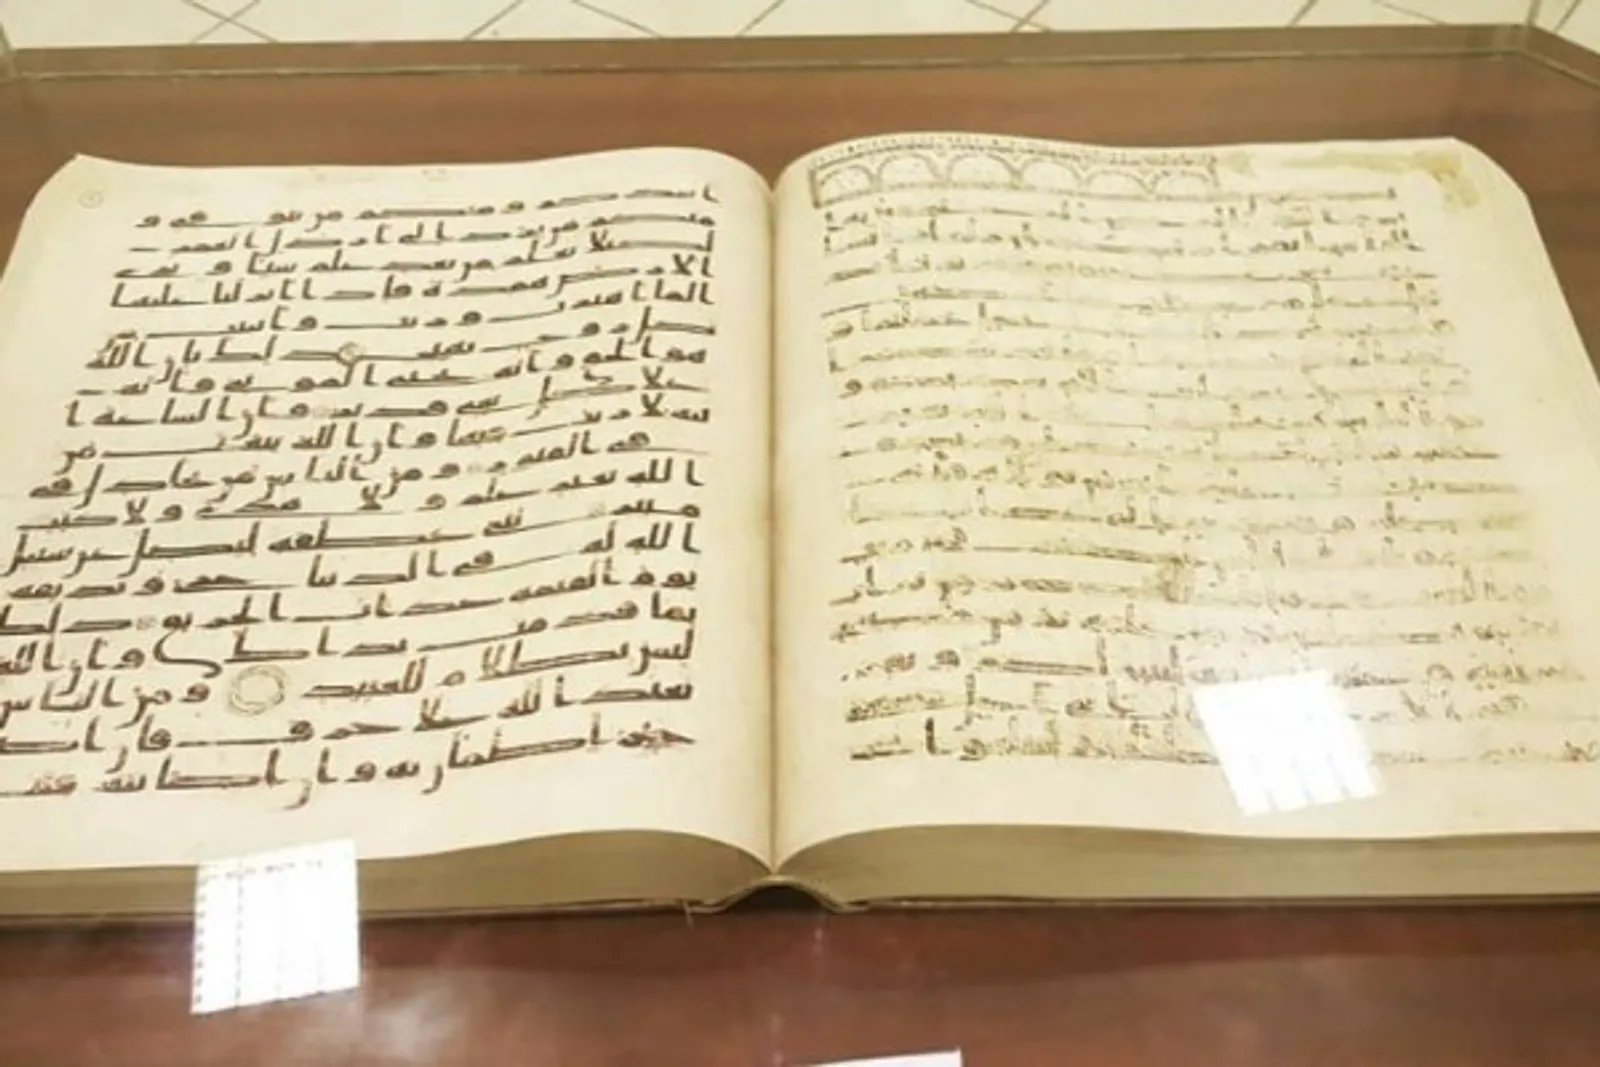 8 Museum Sejarah Islam dari Berbagai Negara, Koleksinya Bikin Takjub